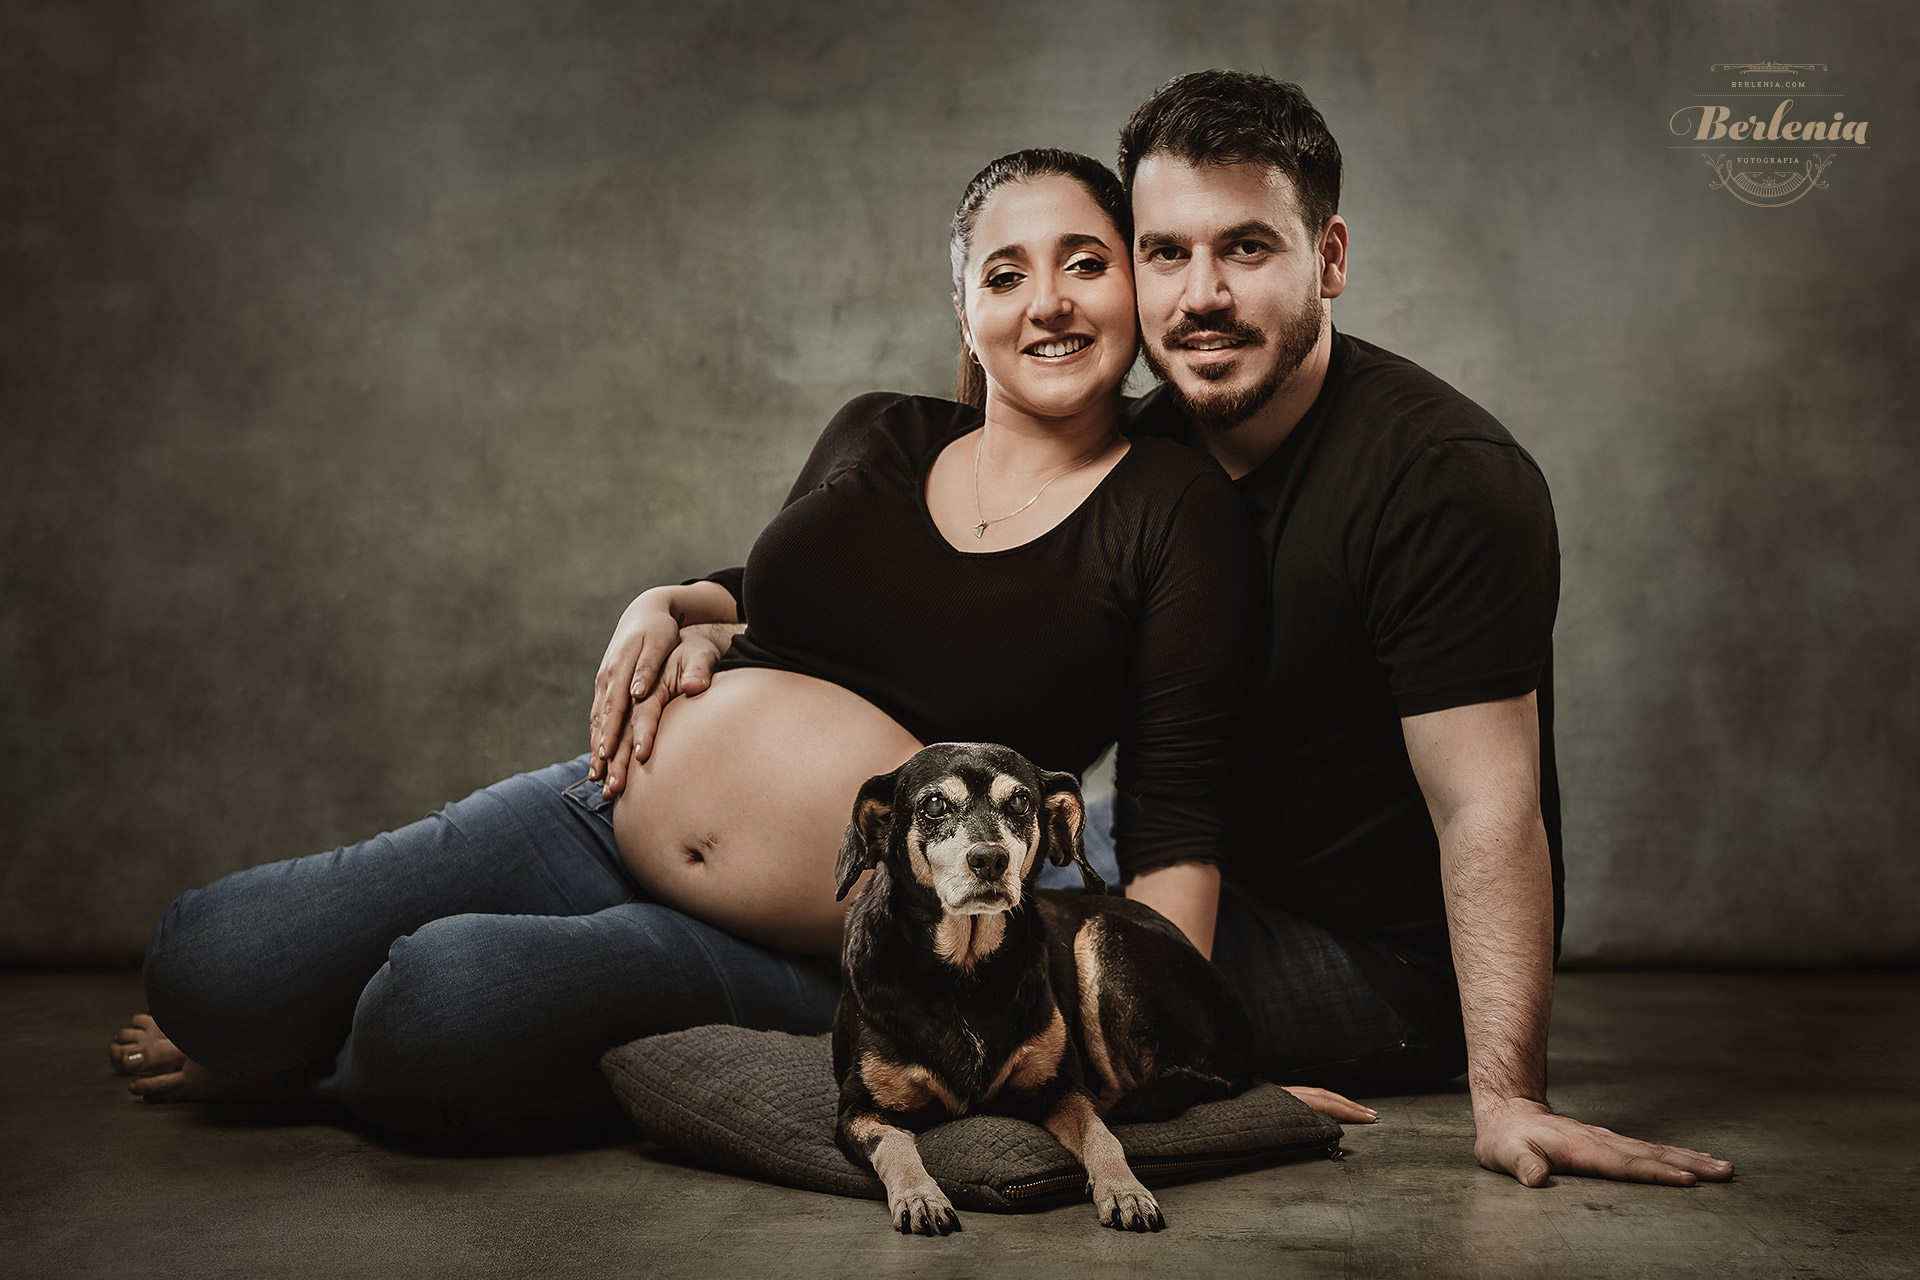 Fotografía de embarazo con pareja y perro | Sesión de fotos con mascota | Villa Urquiza, CABA, Argentina | Berlenia Fotografía - 01